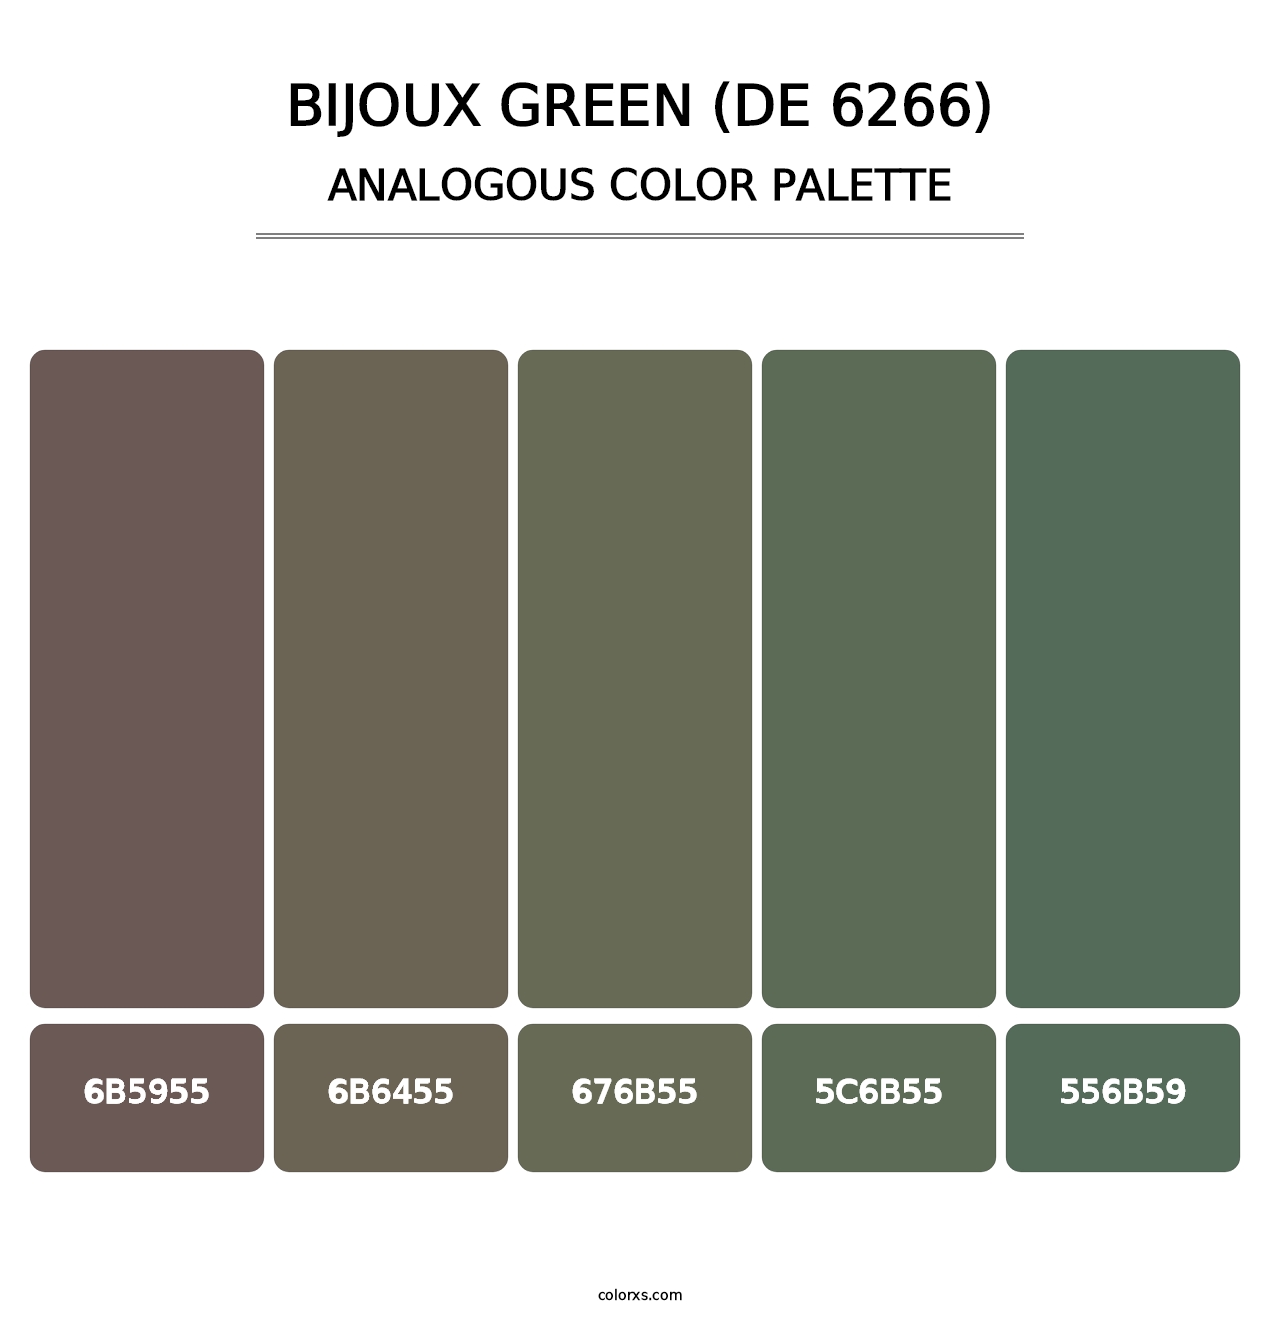 Bijoux Green (DE 6266) - Analogous Color Palette